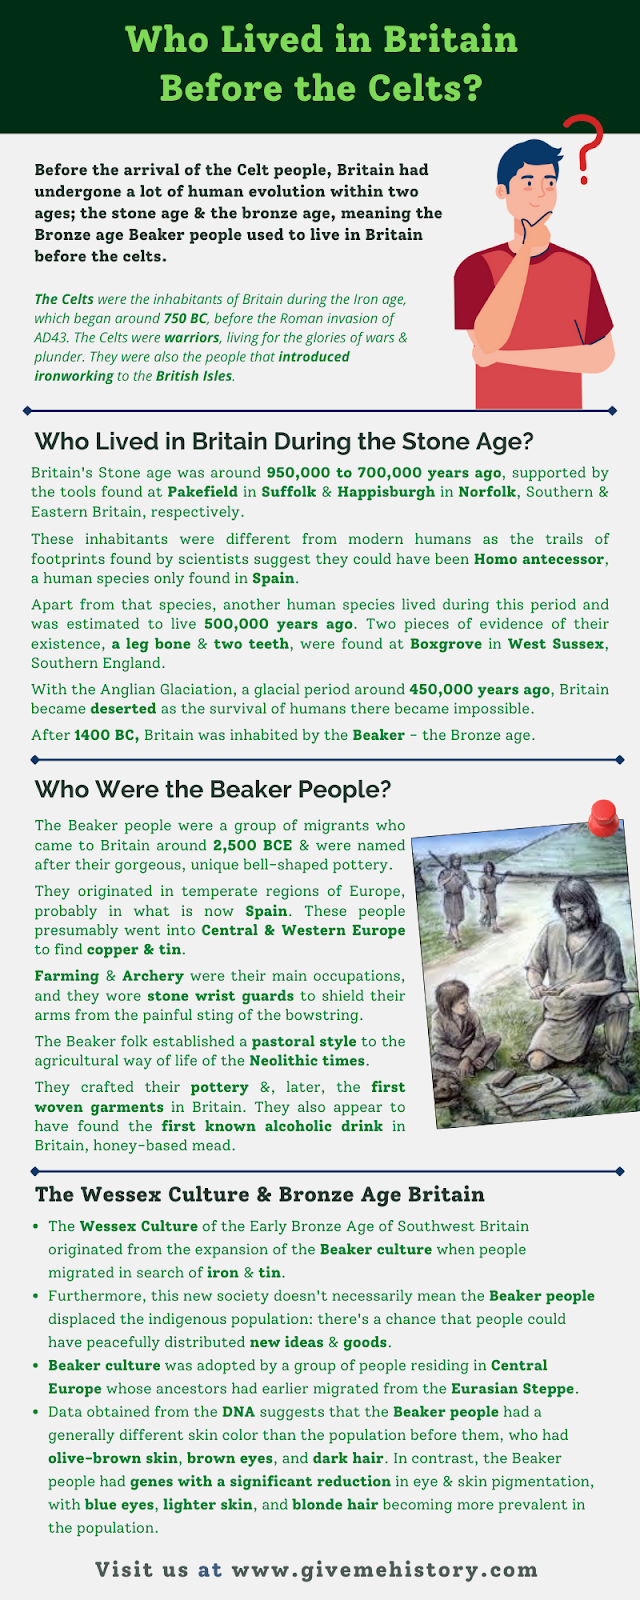 Wer lebte in Großbritannien vor den Kelten?